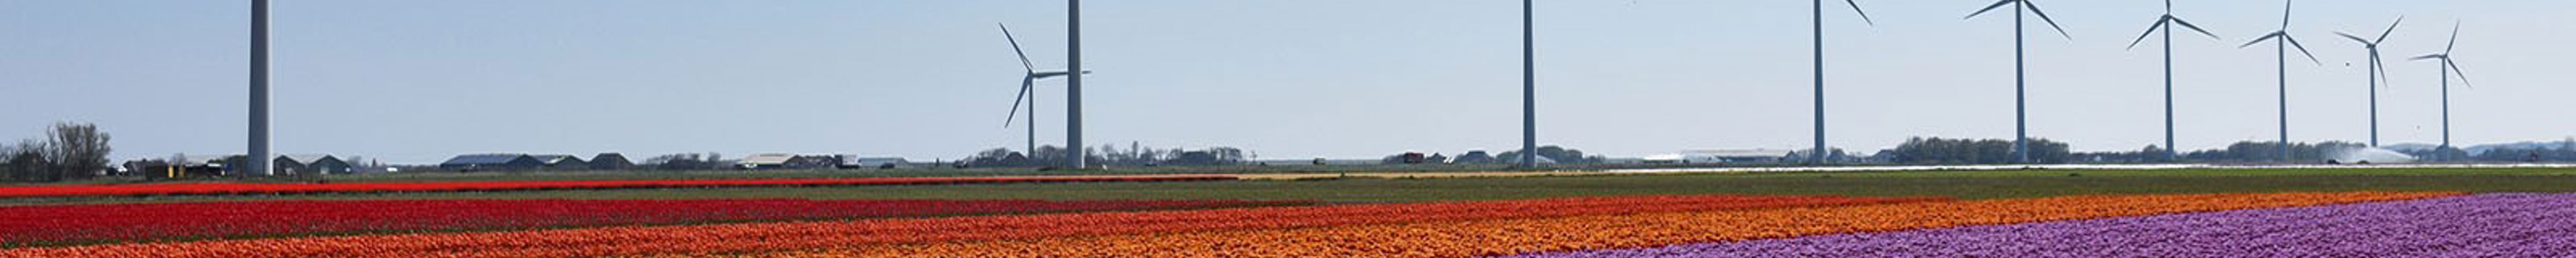 Afbeelding van windmolens naast een tulpenveld